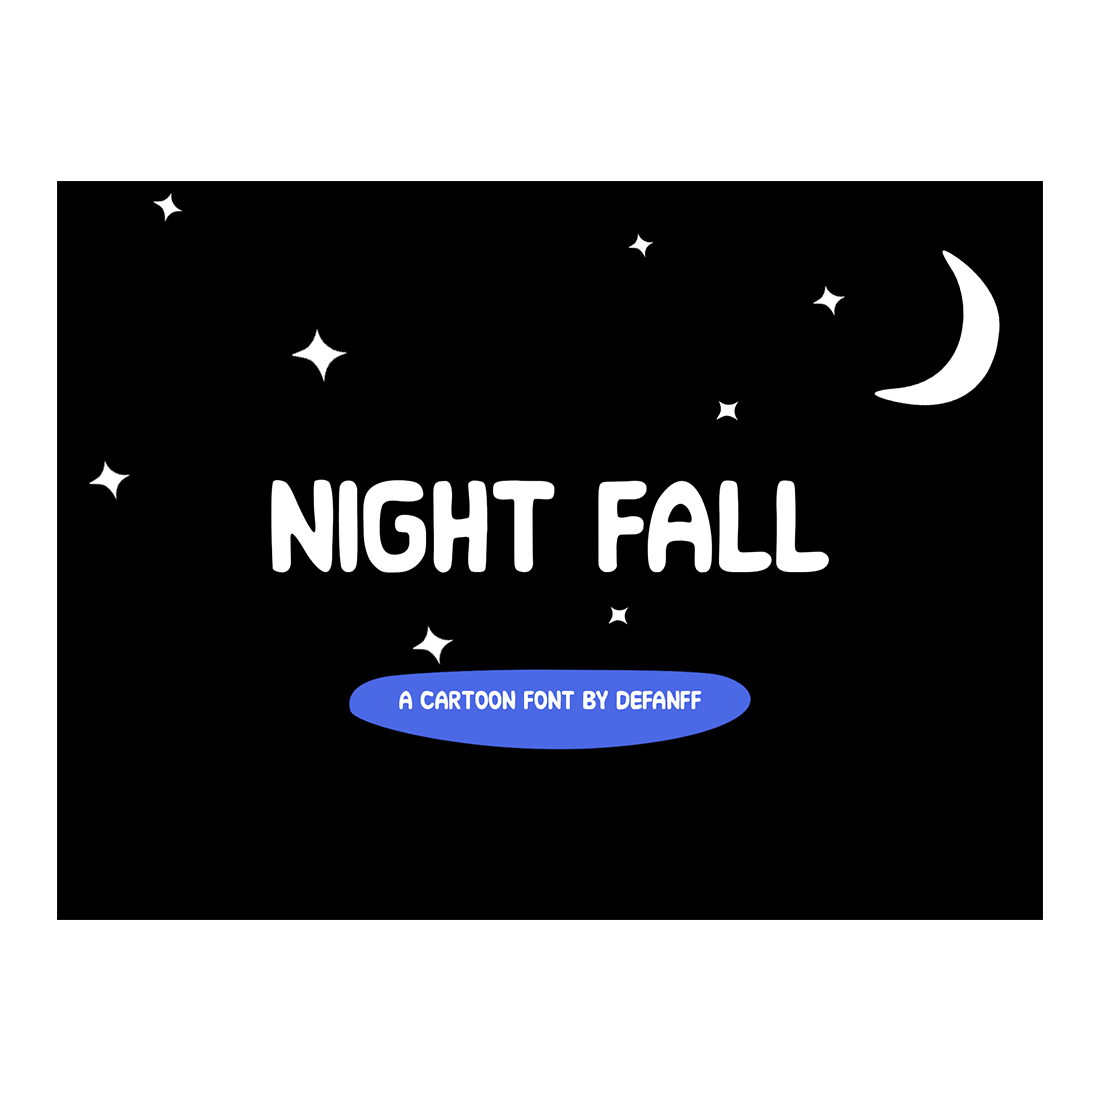 Night Fall Cartoon Font main cover.